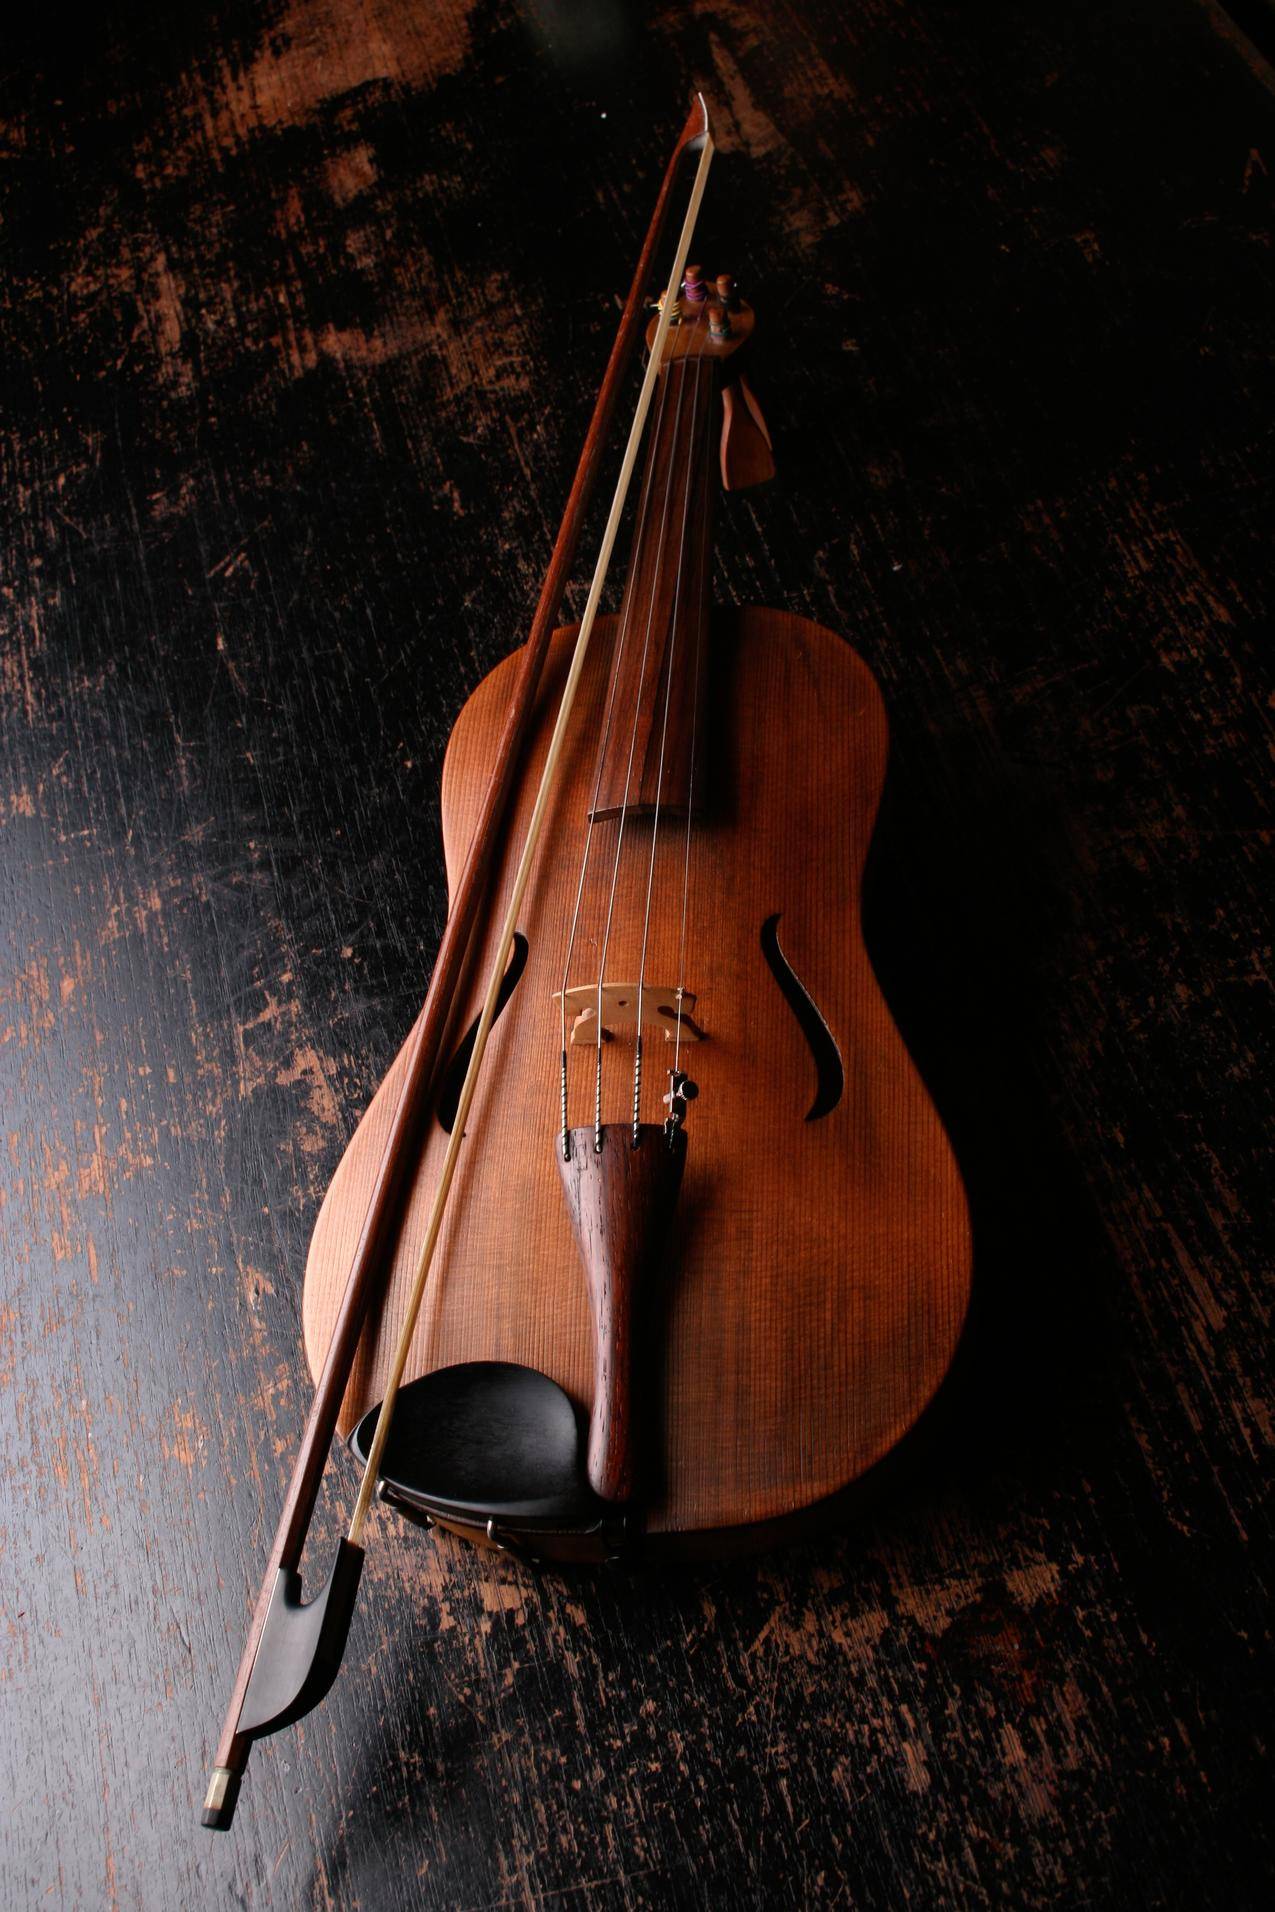 布朗木制小提琴和小提琴弓